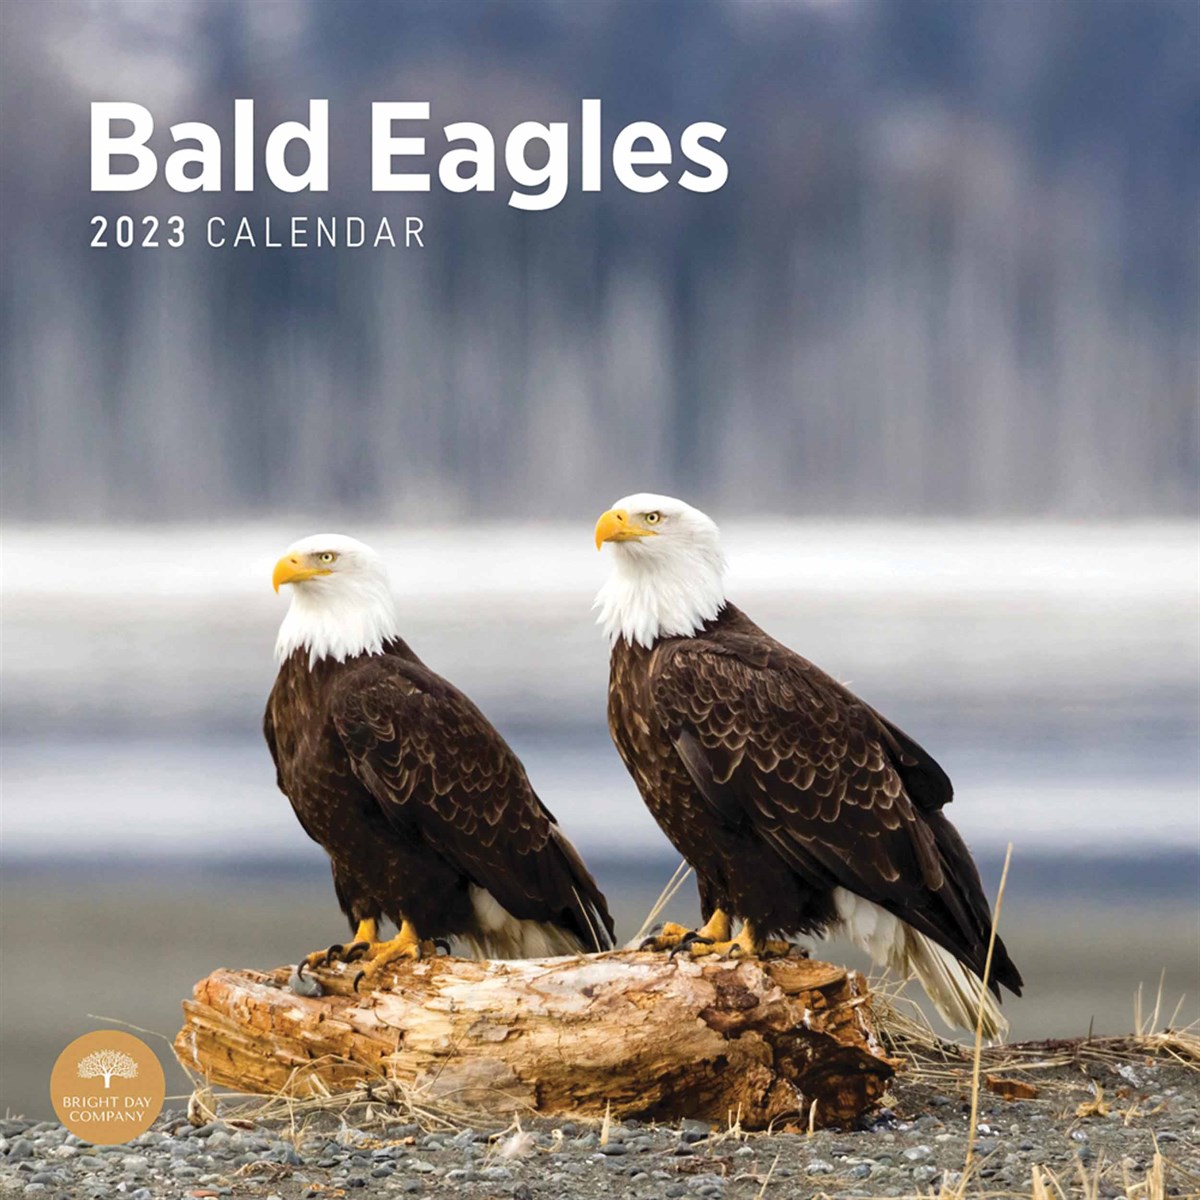 Bald Eagles 2023 Calendars